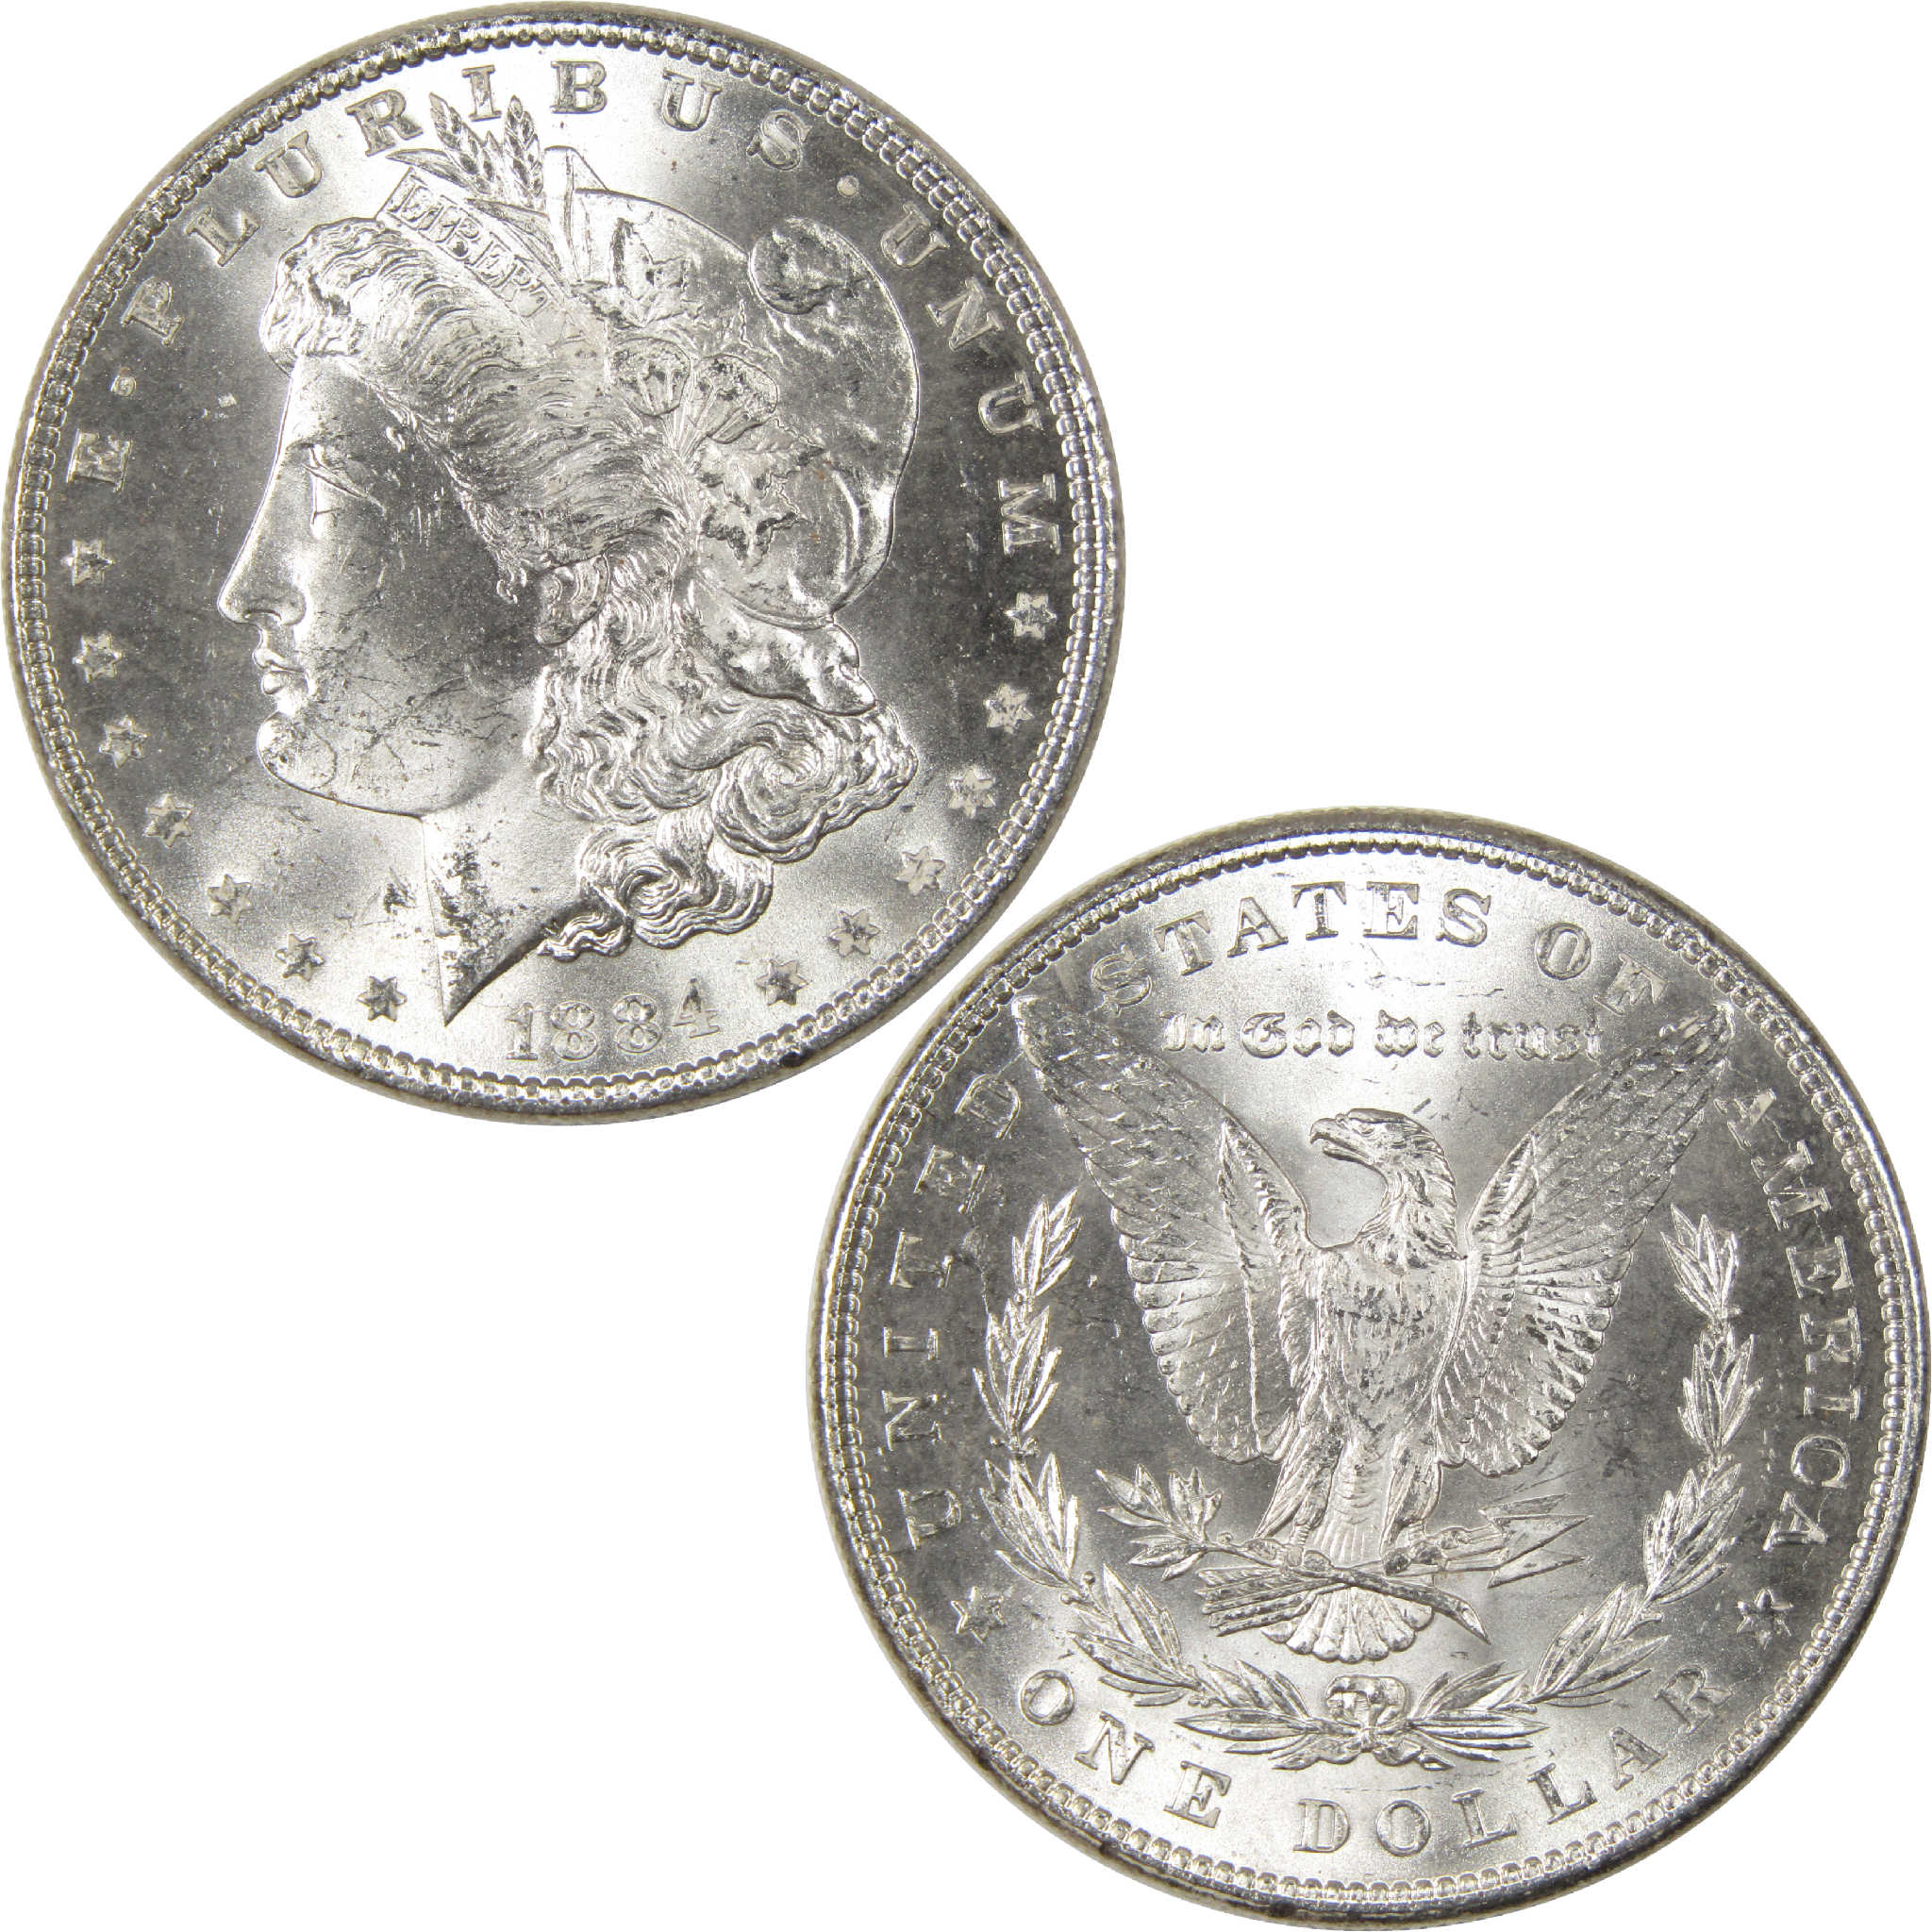 1884 Morgan Dollar Uncirculated Silver $1 Coin - Morgan coin - Morgan silver dollar - Morgan silver dollar for sale - Profile Coins &amp; Collectibles